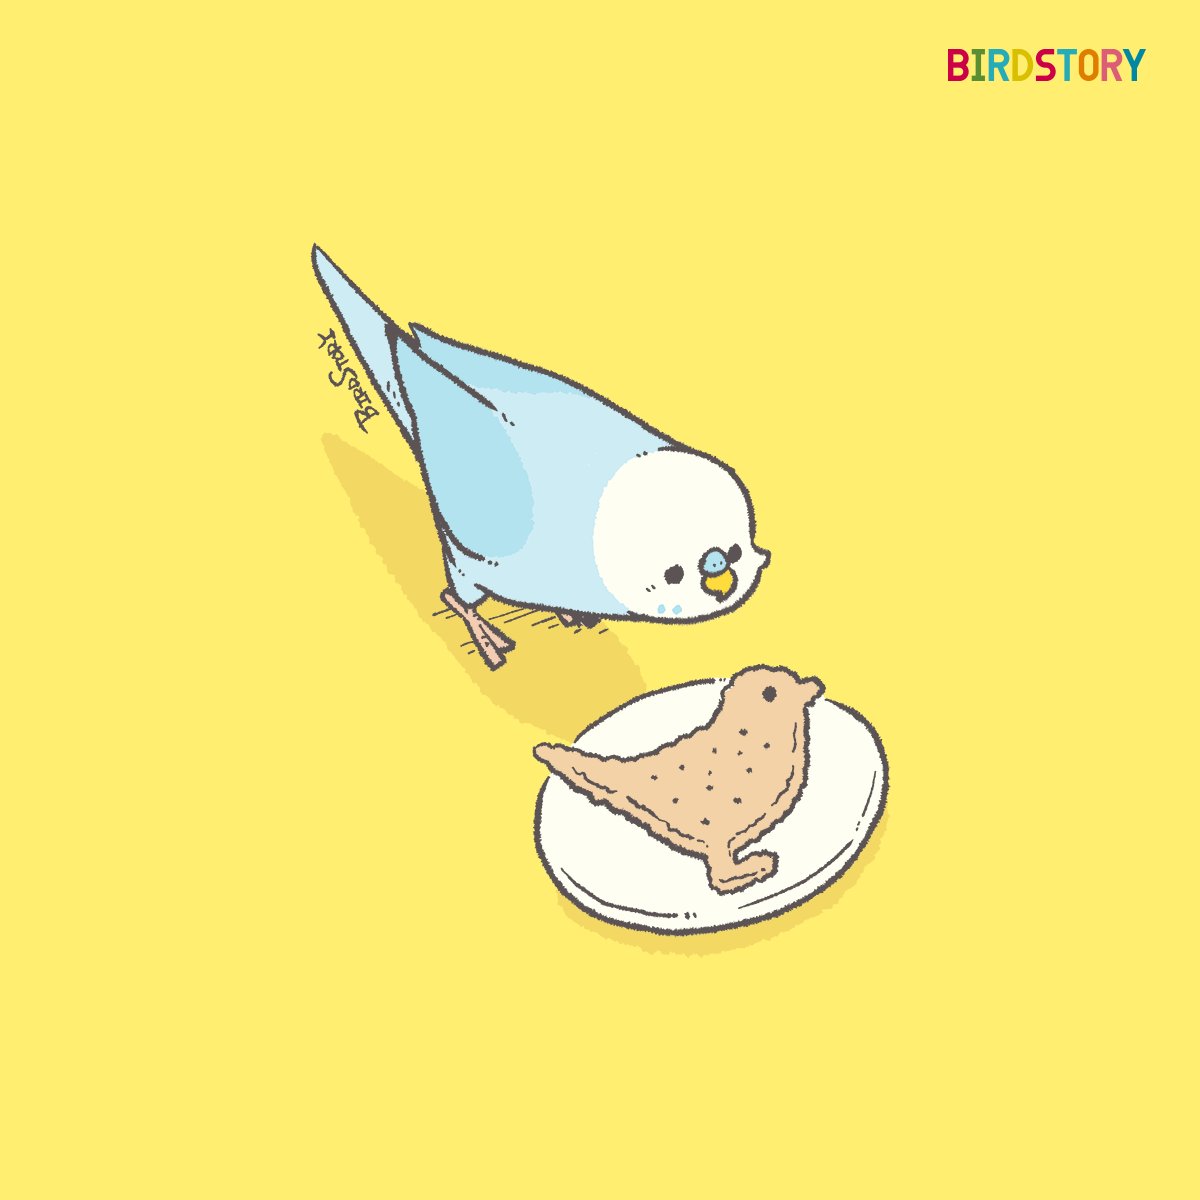 「おはようございます。本日は2月28日、ビスケットの日とのことです#BIRDSTO」|BIRDSTORYのイラスト